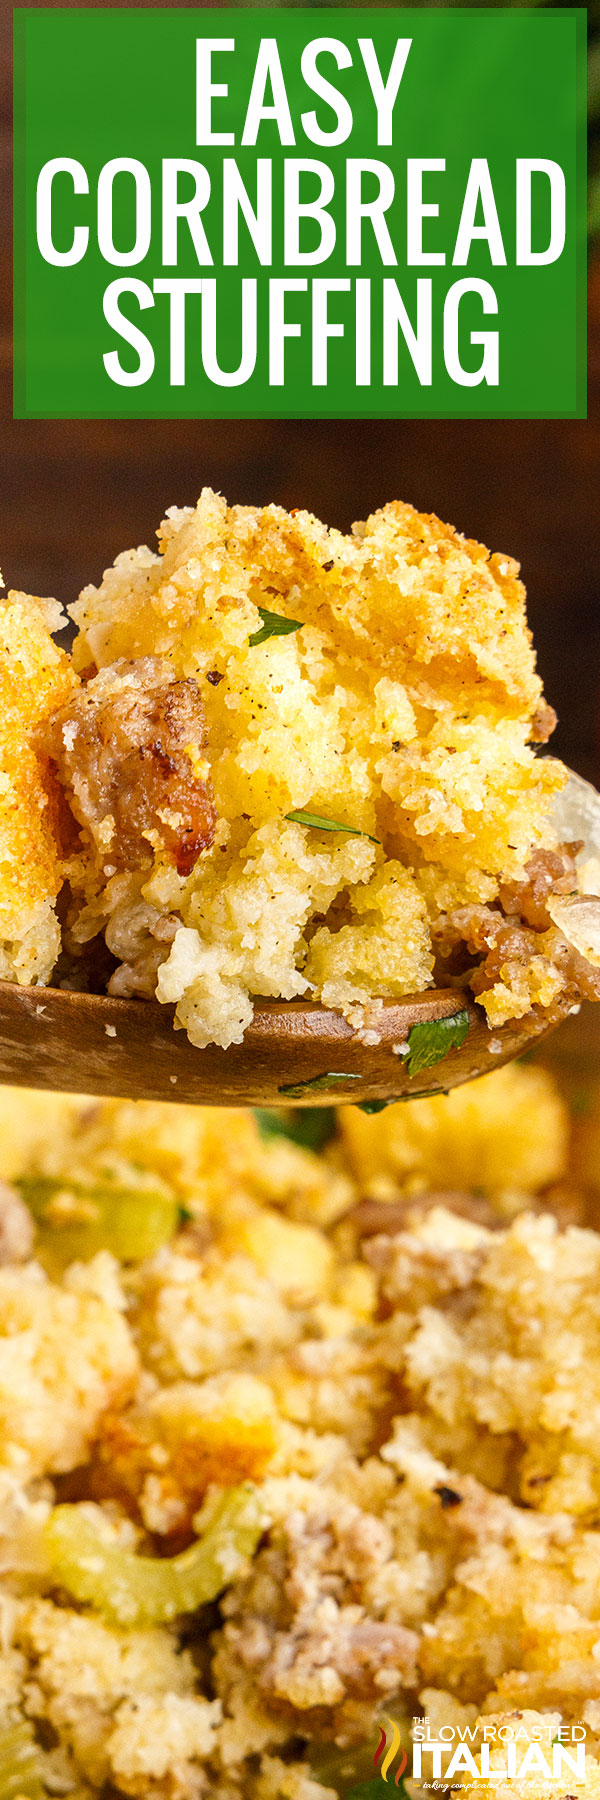 easy cornbread stuffing recipe.